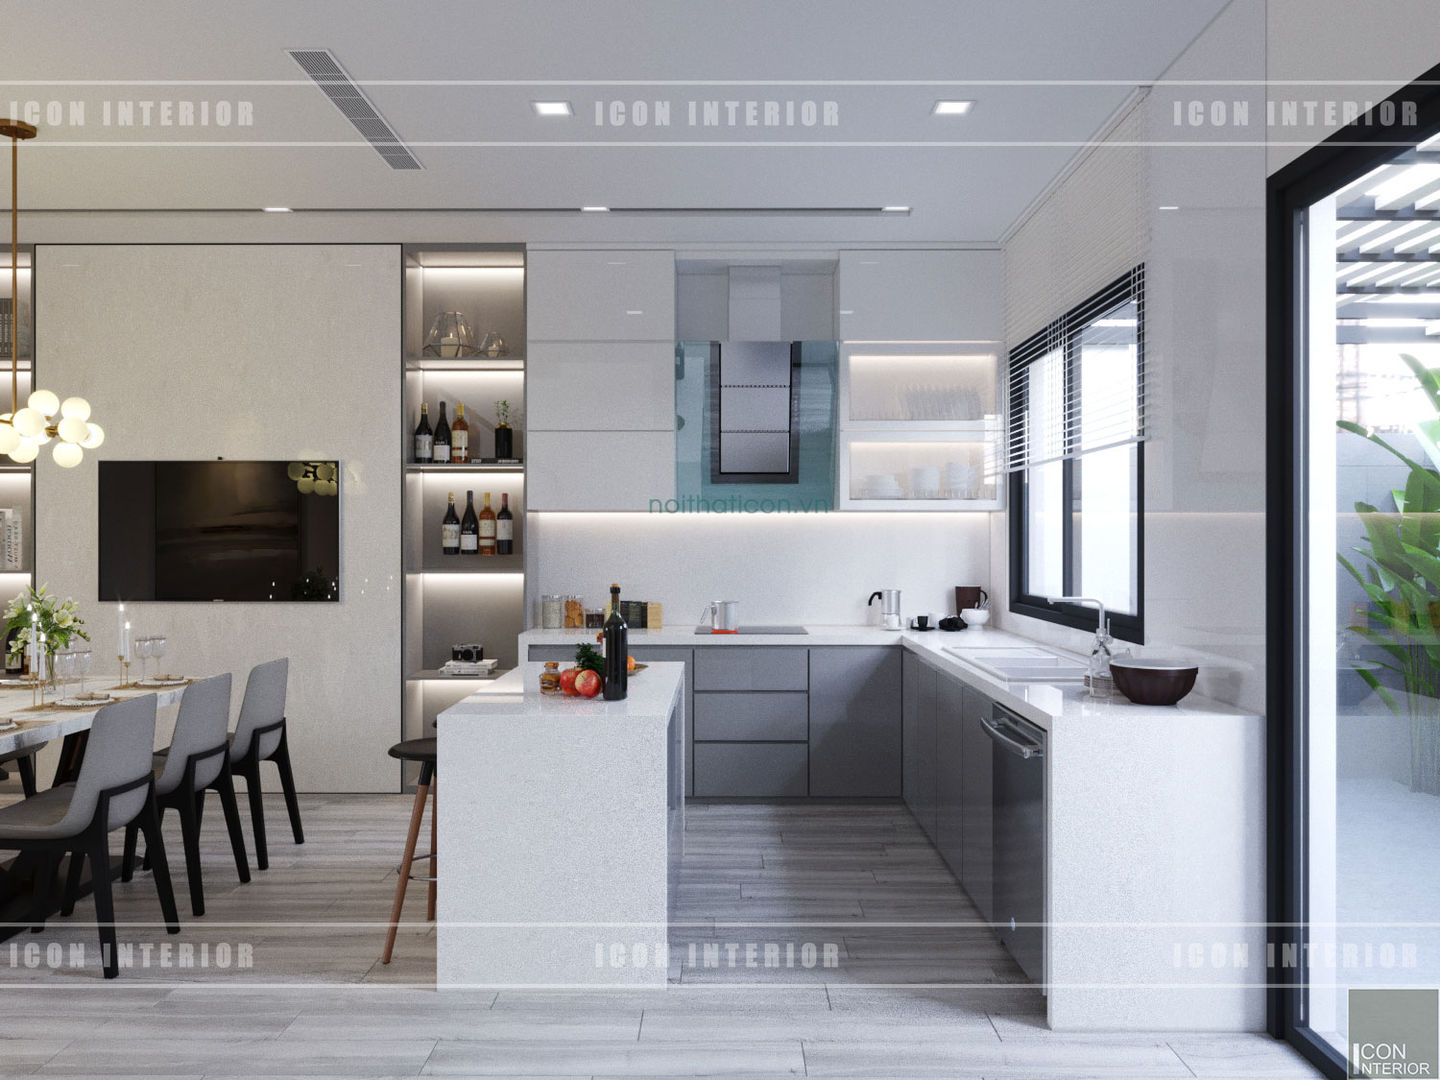 Thiết kế nội thất biệt thự Nine South - Tinh tế đến từng chi tiết nhỏ!, ICON INTERIOR ICON INTERIOR Кухня